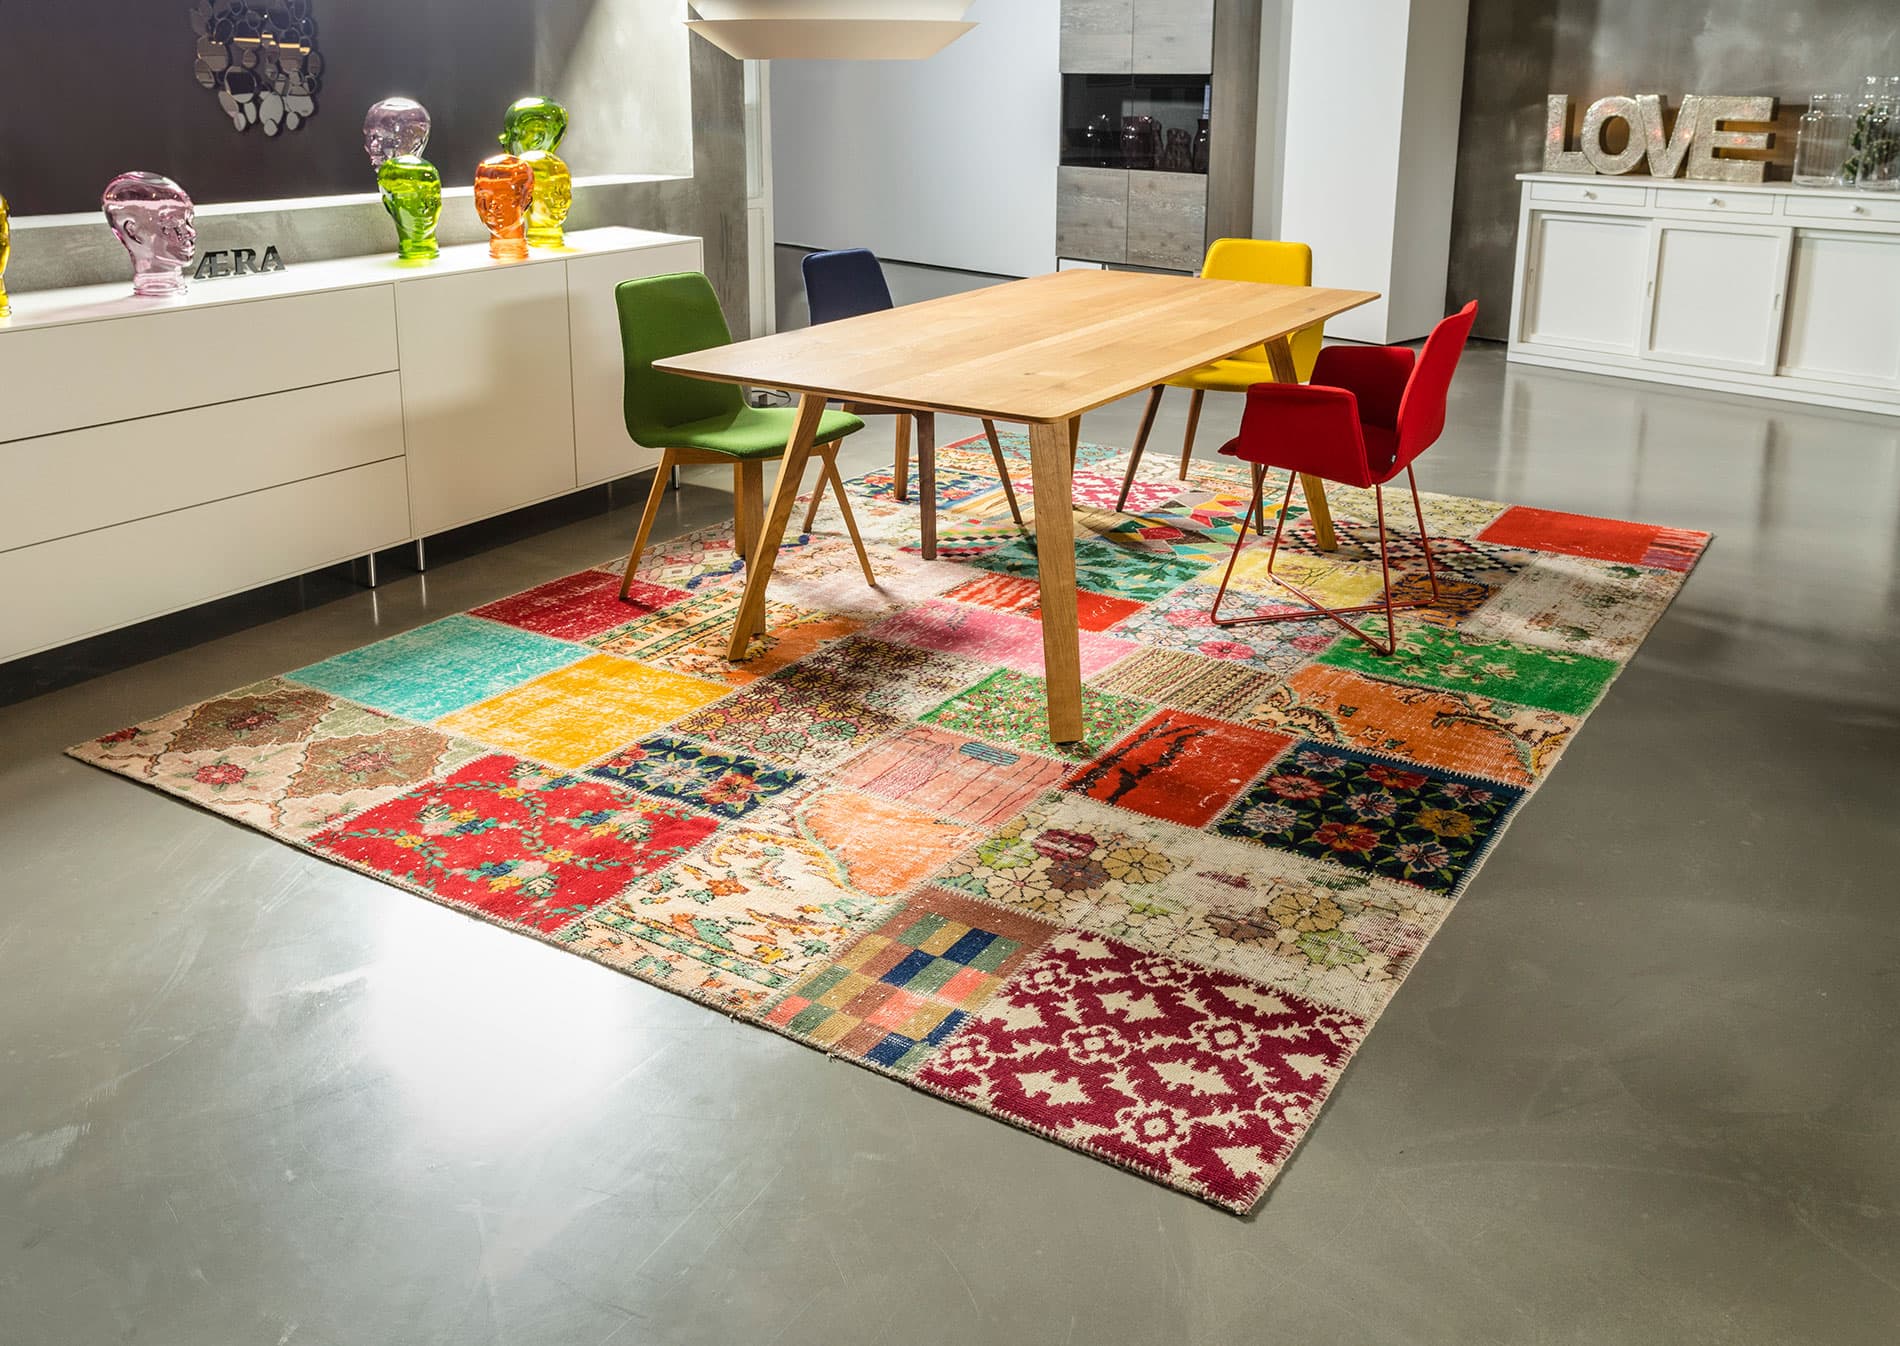 exclusiver designer teppich mit einem buntem patchwork muster in einer mordernen küche mit sideboard, einem holztisch und stühlen